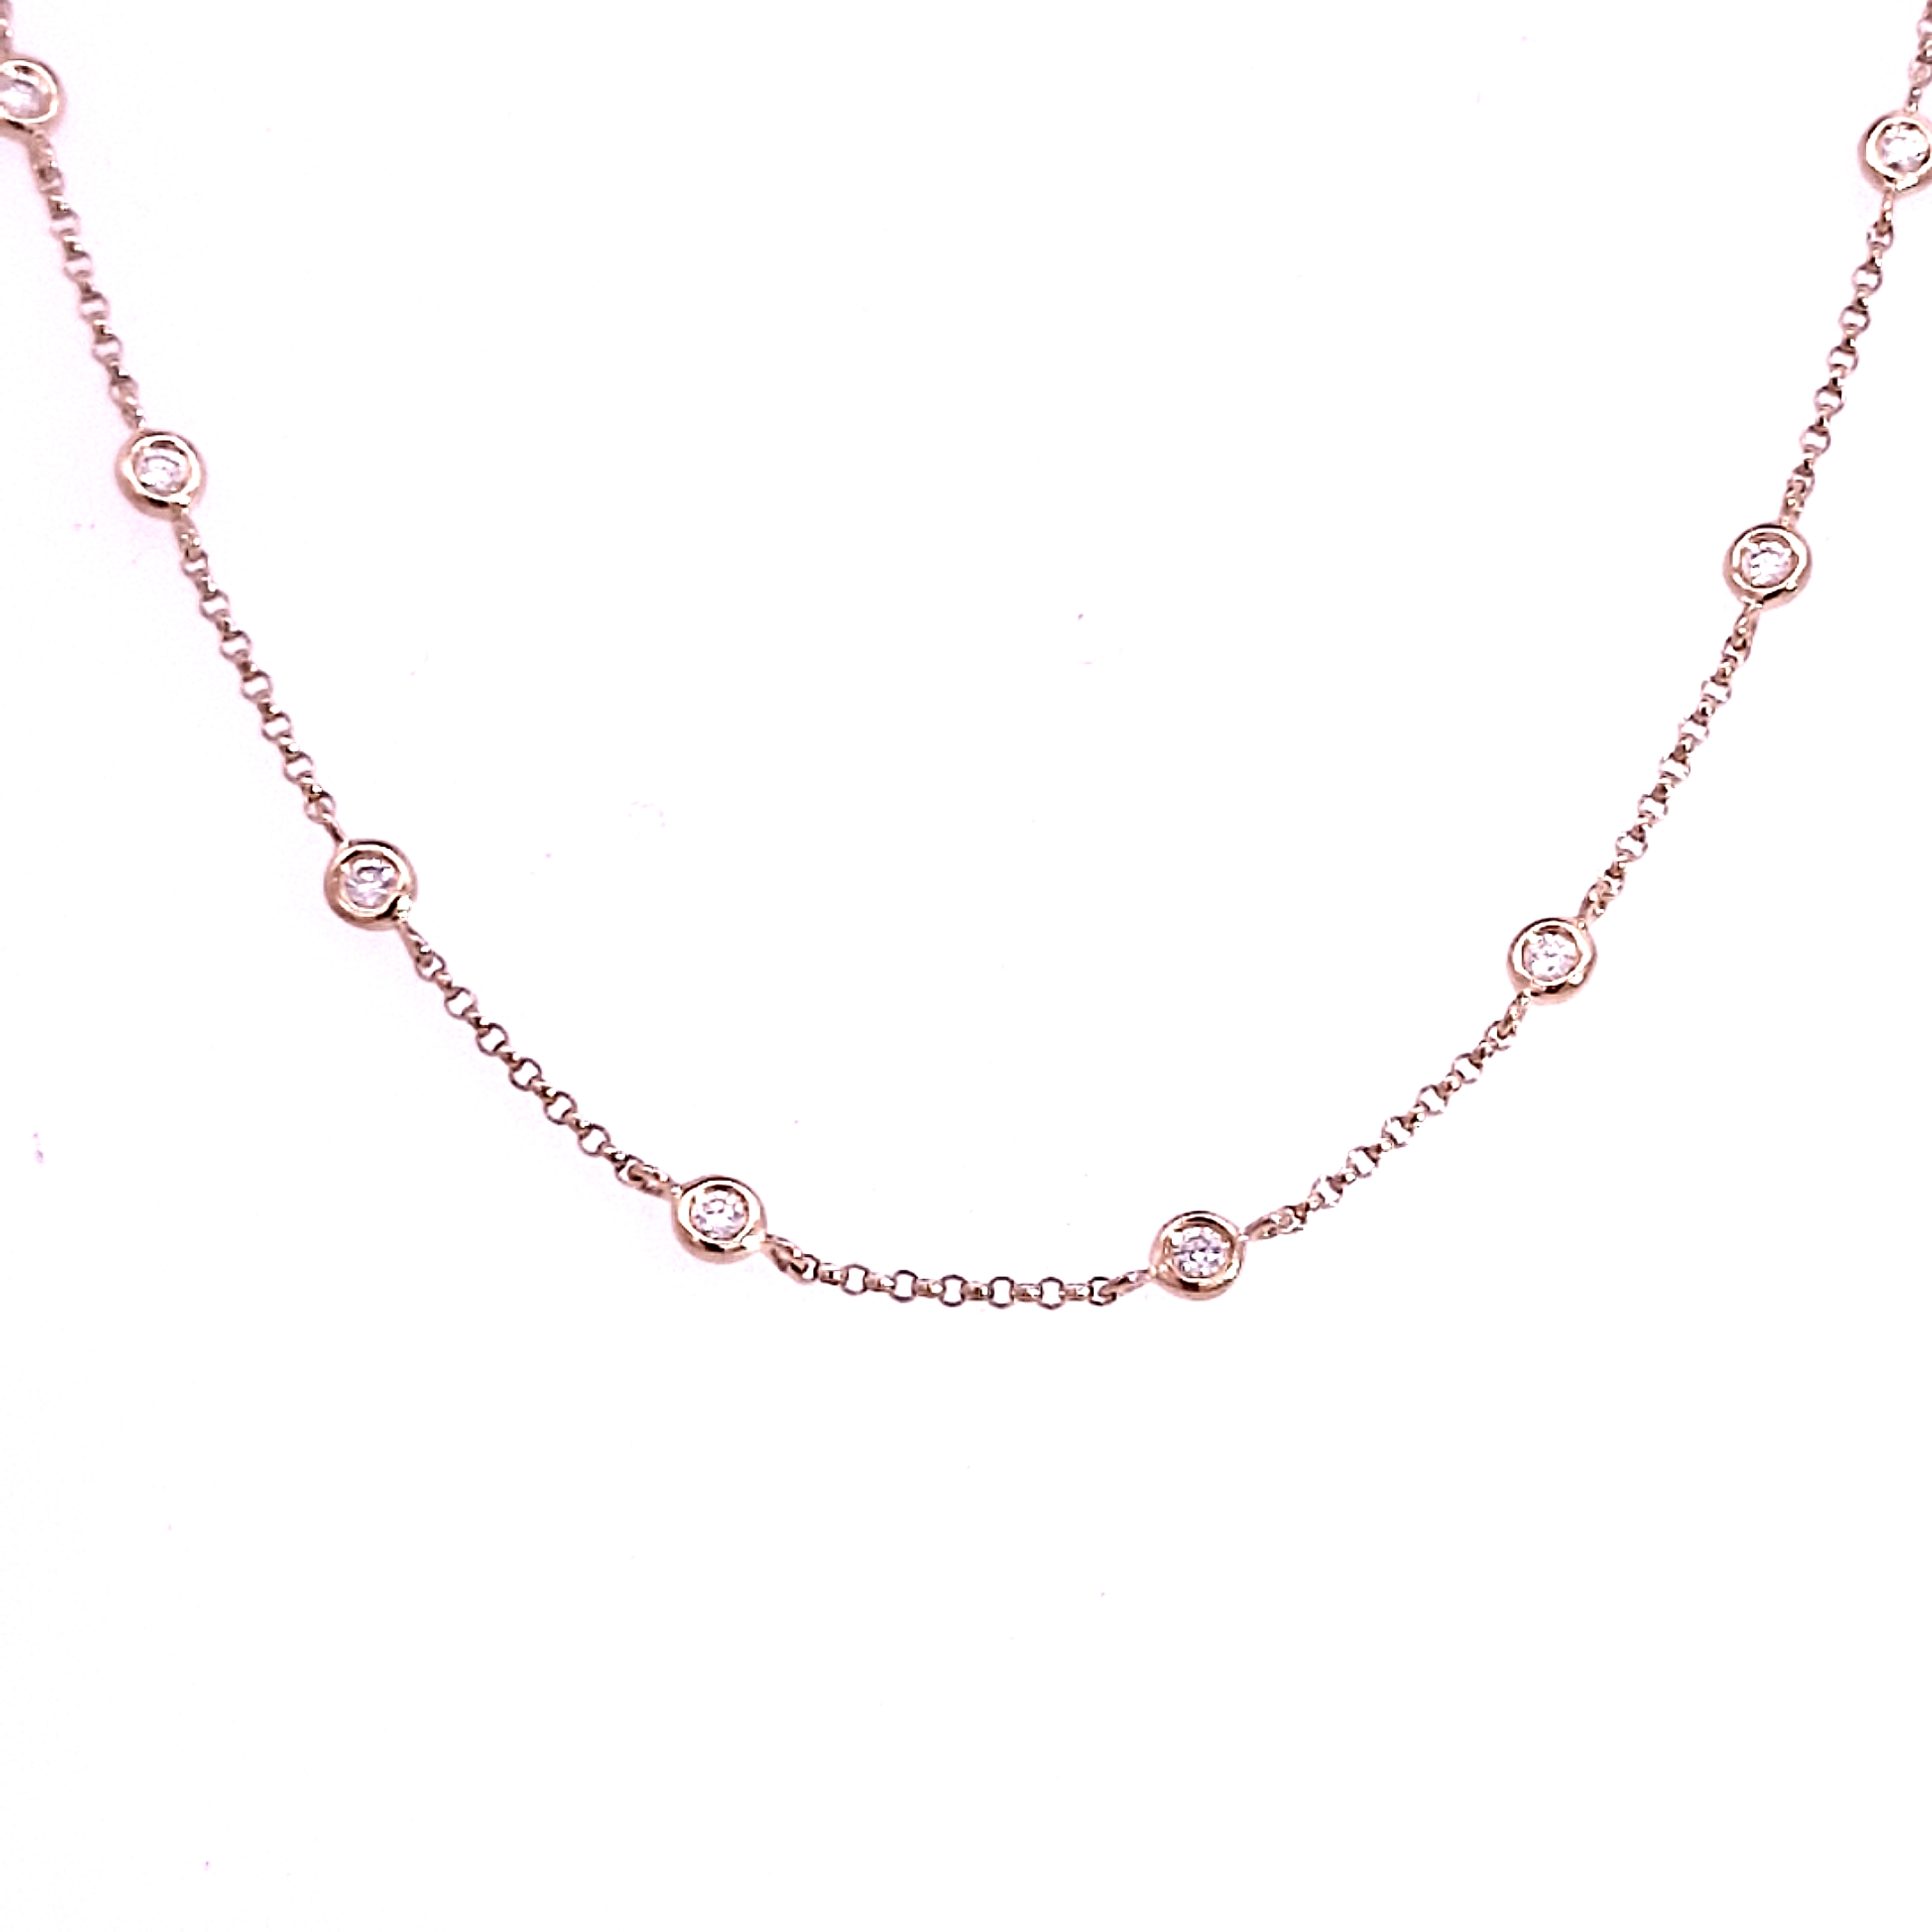 18 Carat Rose Gold and Diamond Necklace - 0.52 Carats